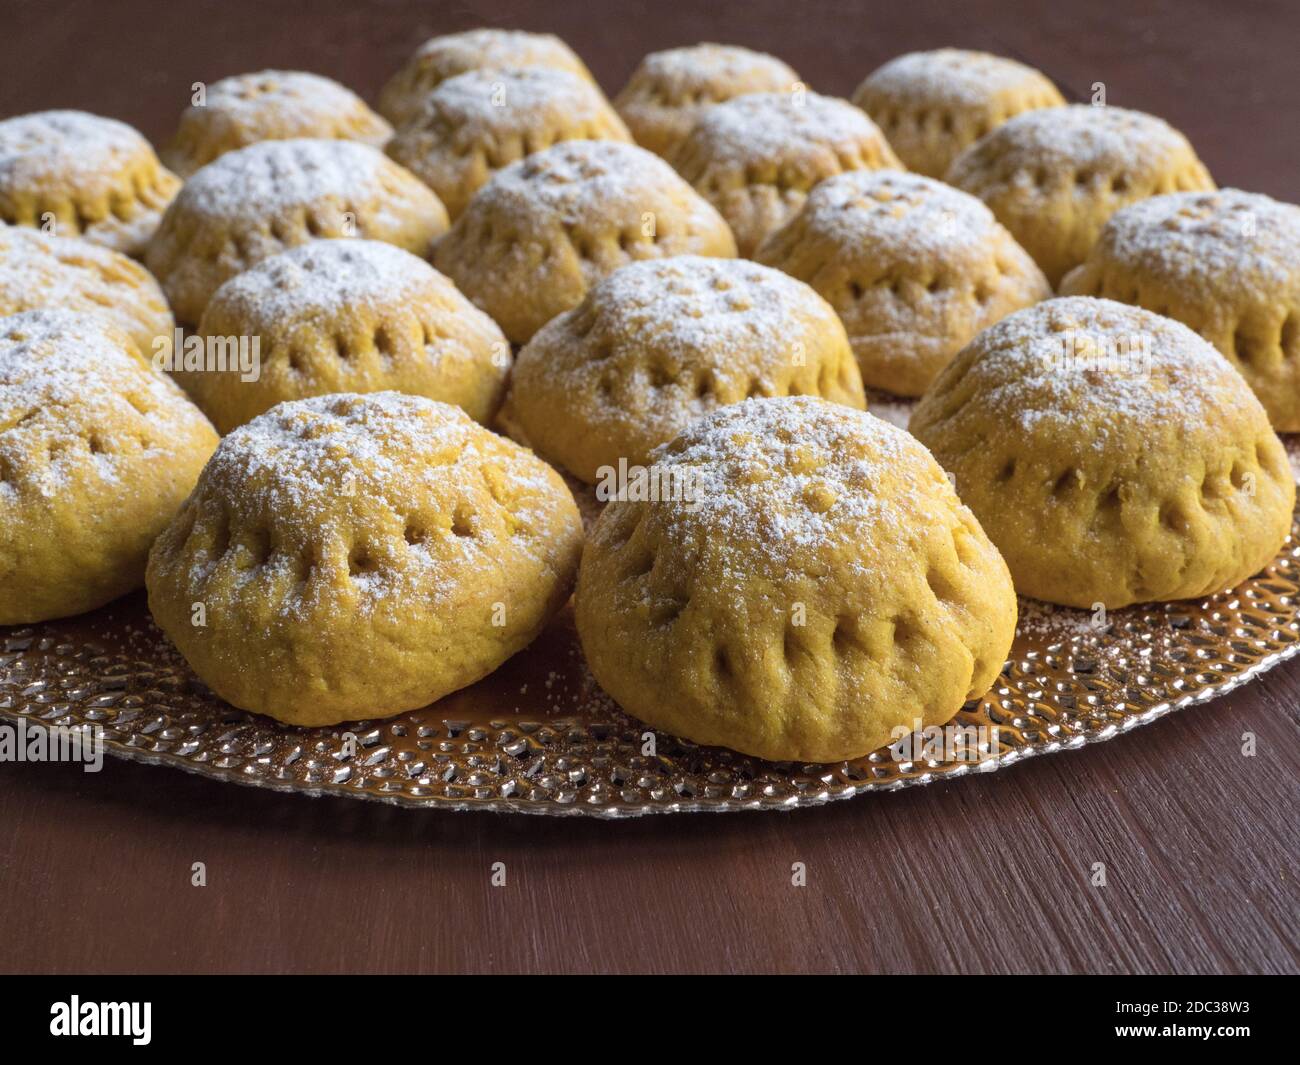 Biscuits égyptiens 'Kahk El Eid', variation avec l'ajout de curcuma lors de la cuisson. Biscuits de la fête islamique El Fitr. Bonbons du Ramadan. Banque D'Images